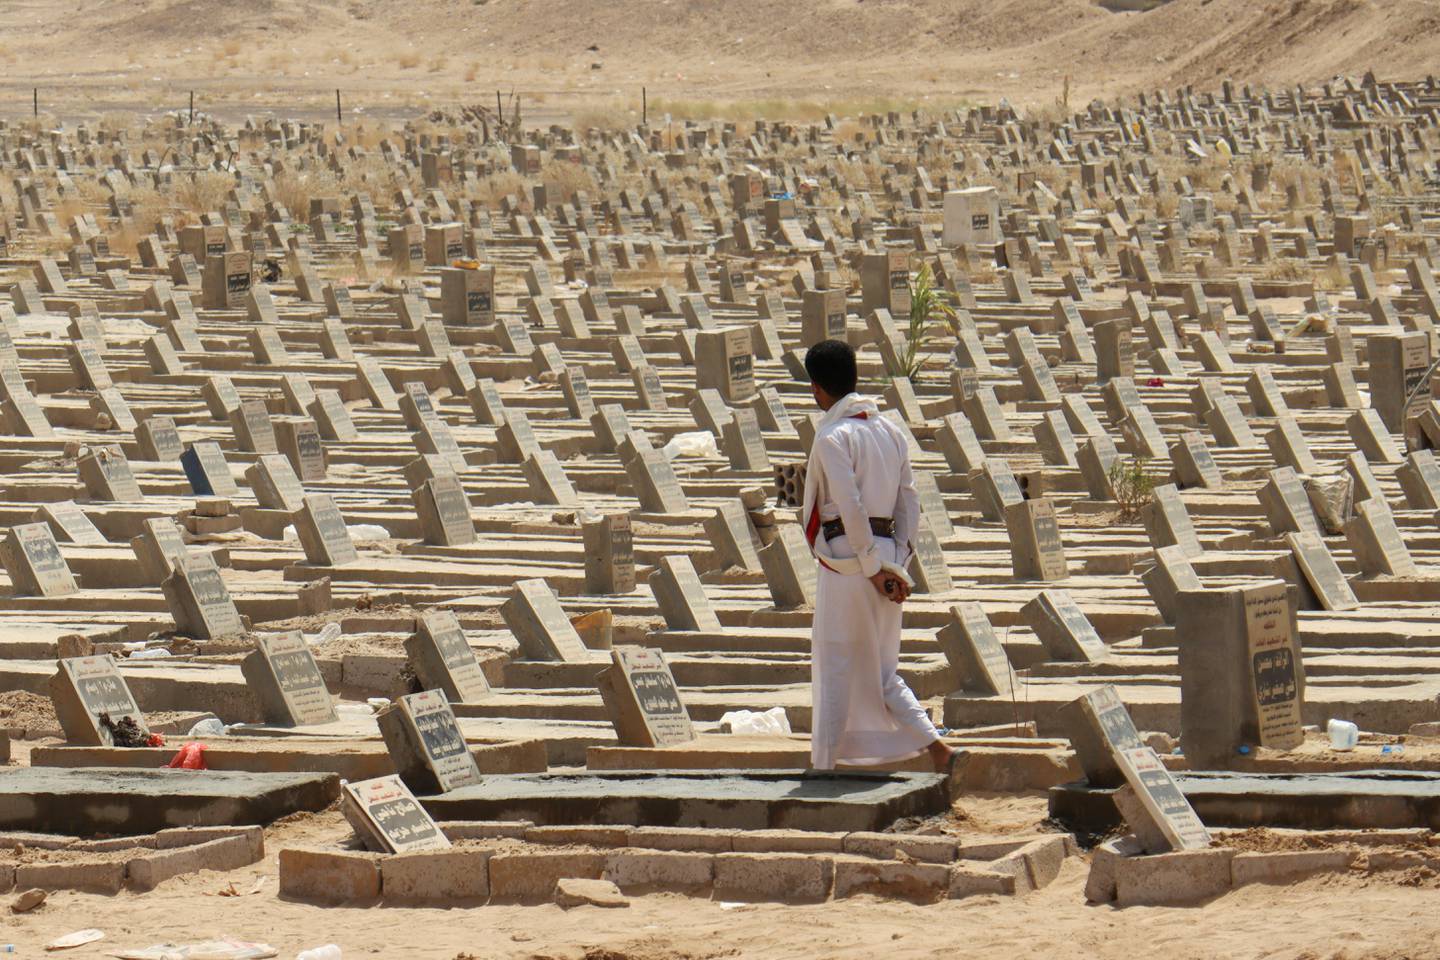 A man walks at a graveyard in Marib, Yemen February 28, 2021. REUTERS/Ali Owidha